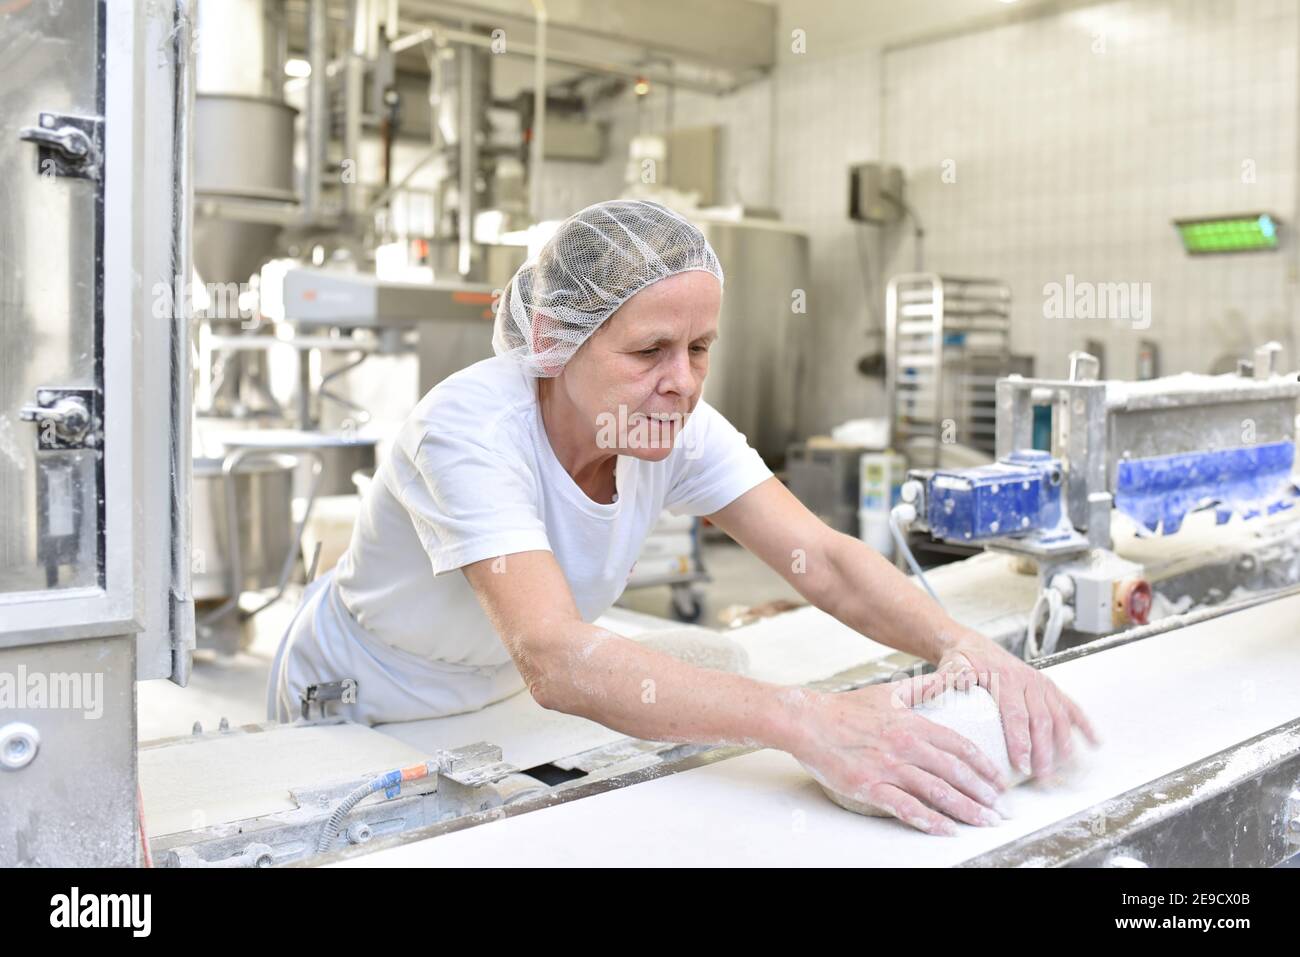 Arbeiter in einer Großbäckerei - Industrieproduktion von Backwaren auf einer Fließstrecke Stockfoto